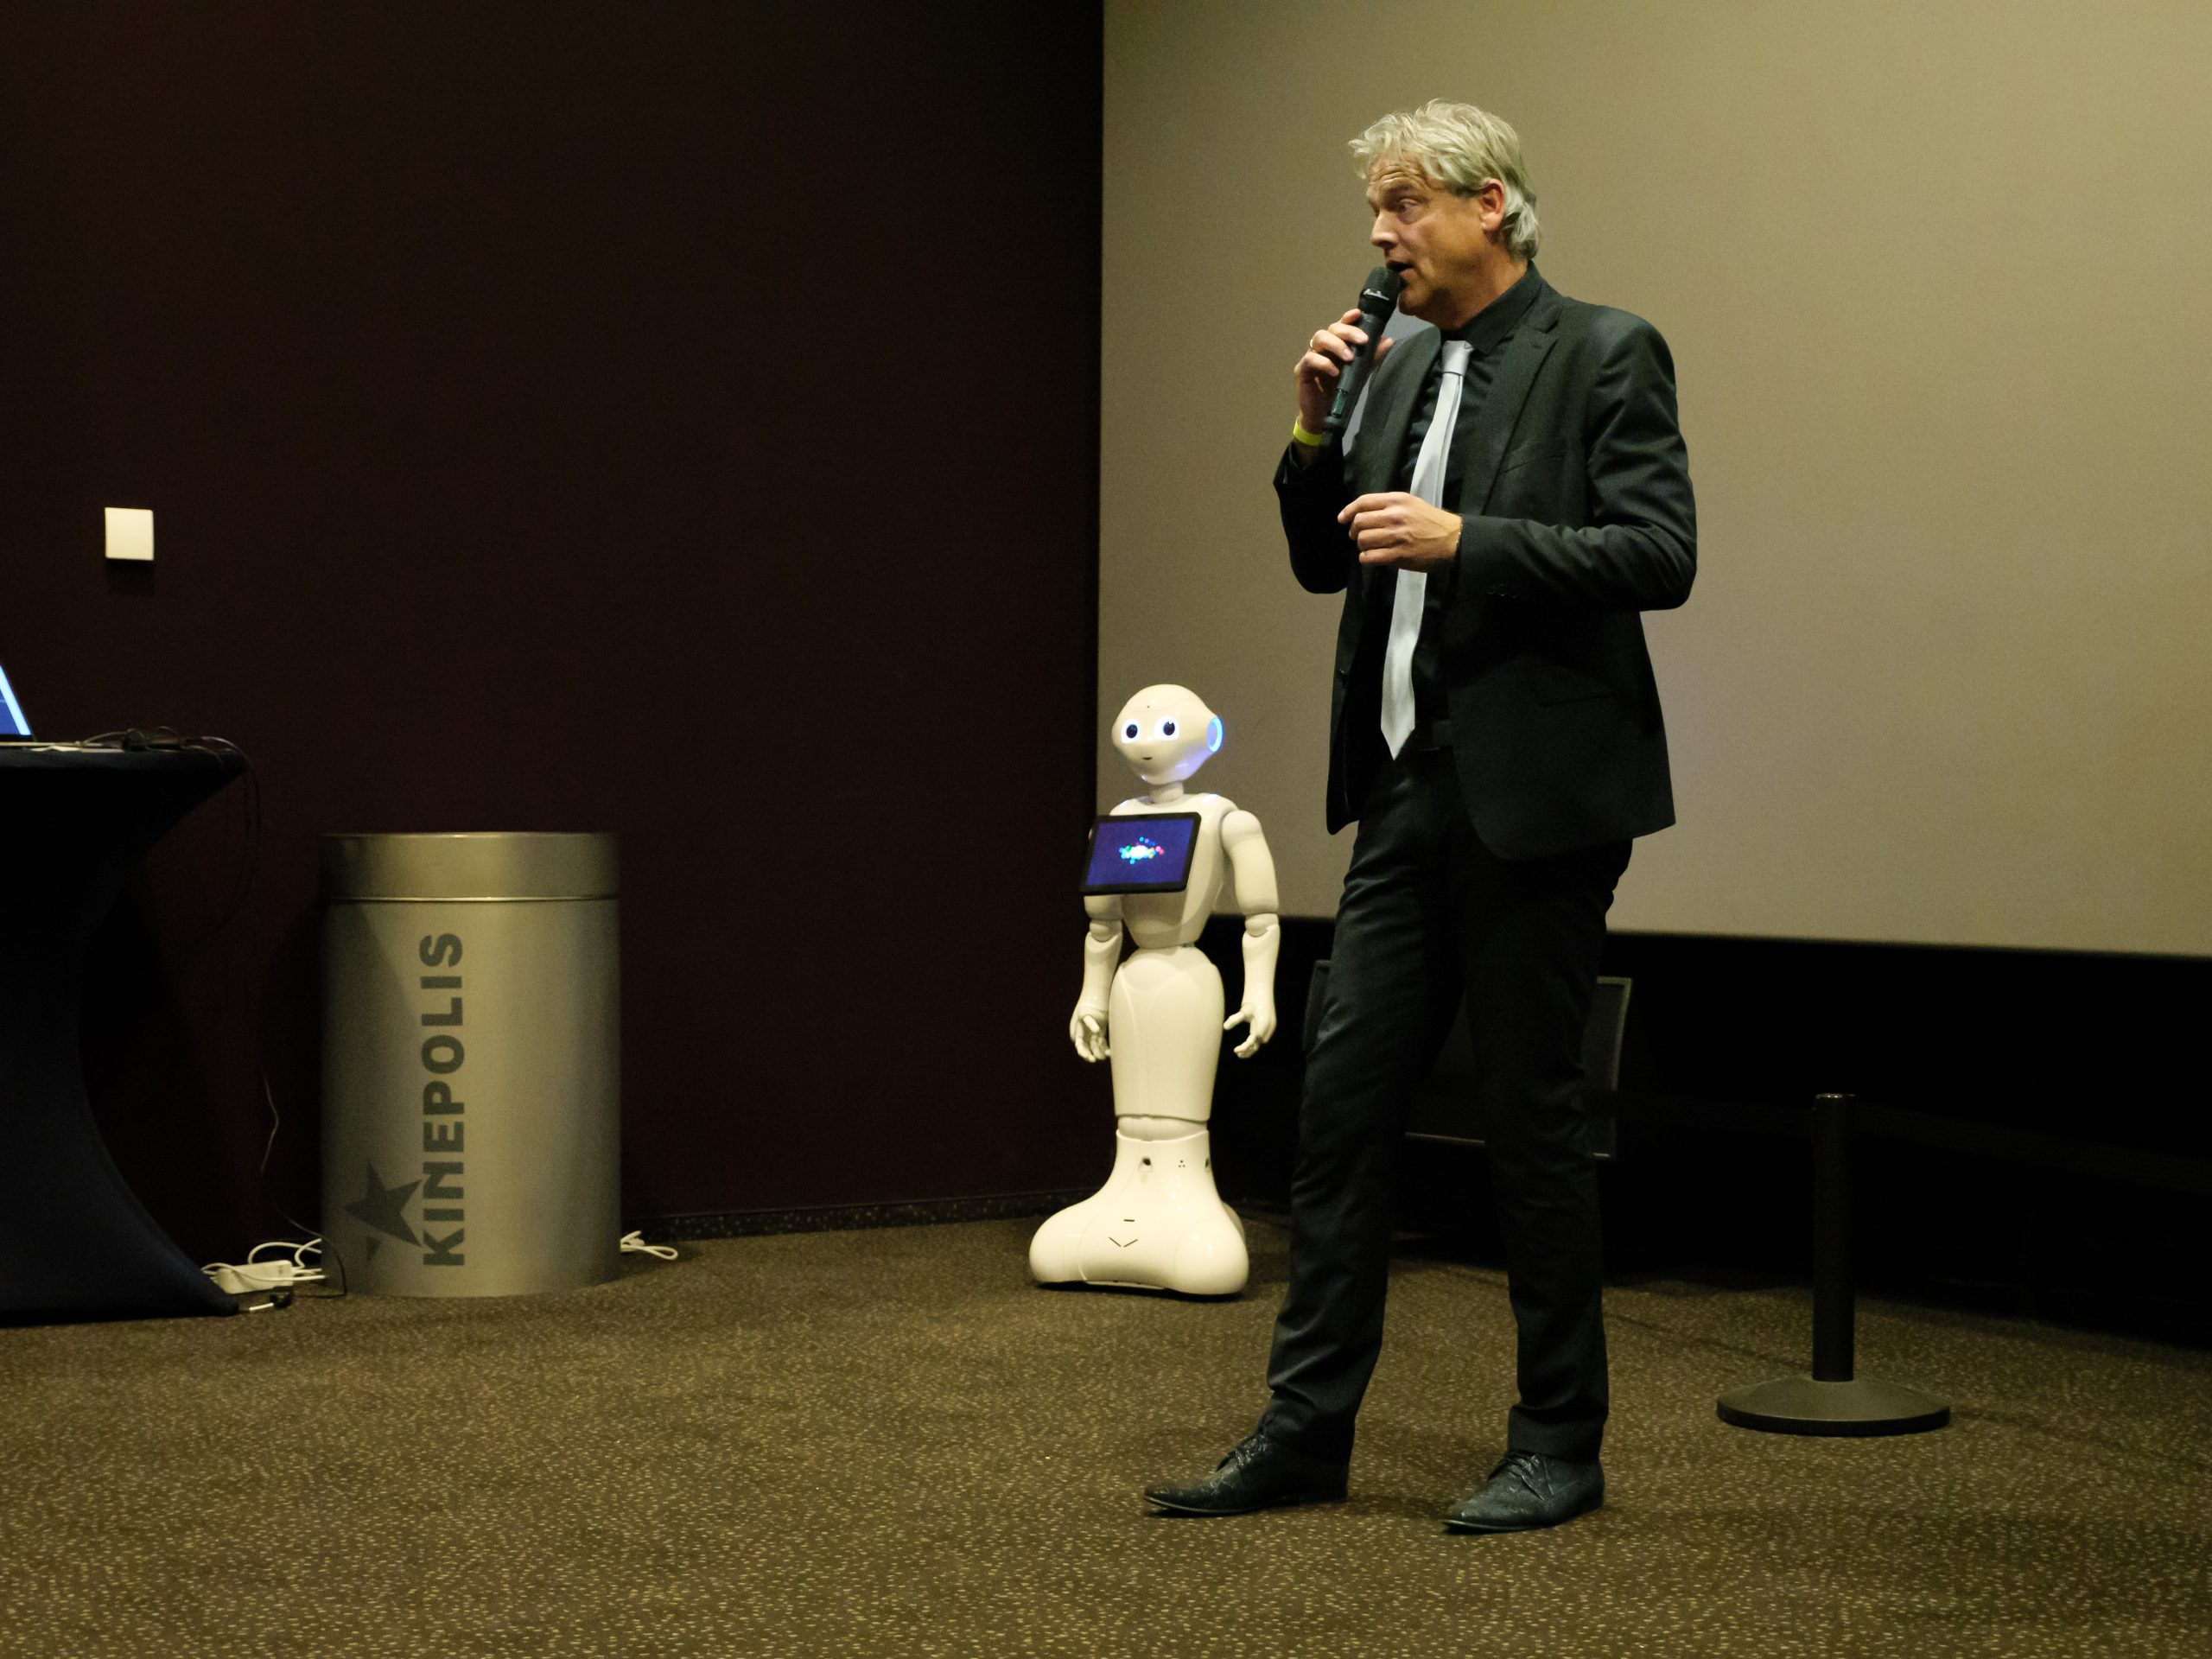 Gastheer Bas Baalmans, met zijn assistent, robot Pepper.